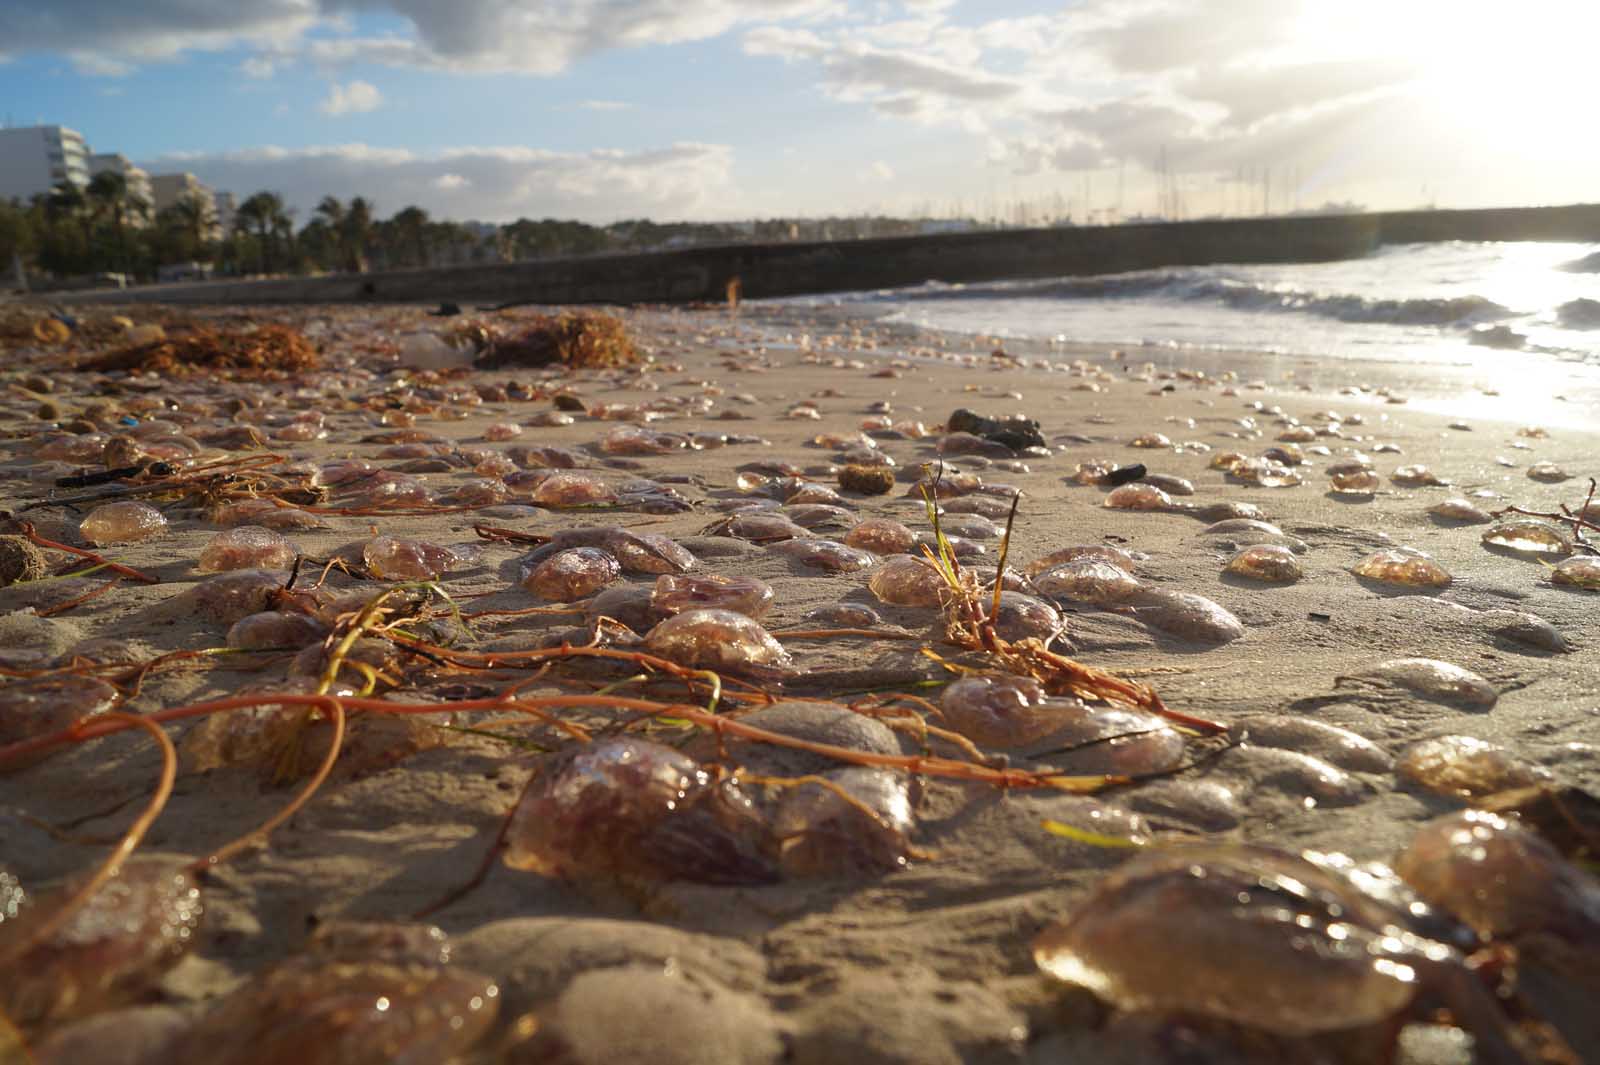 feuerquallen stranden an der playa de palma